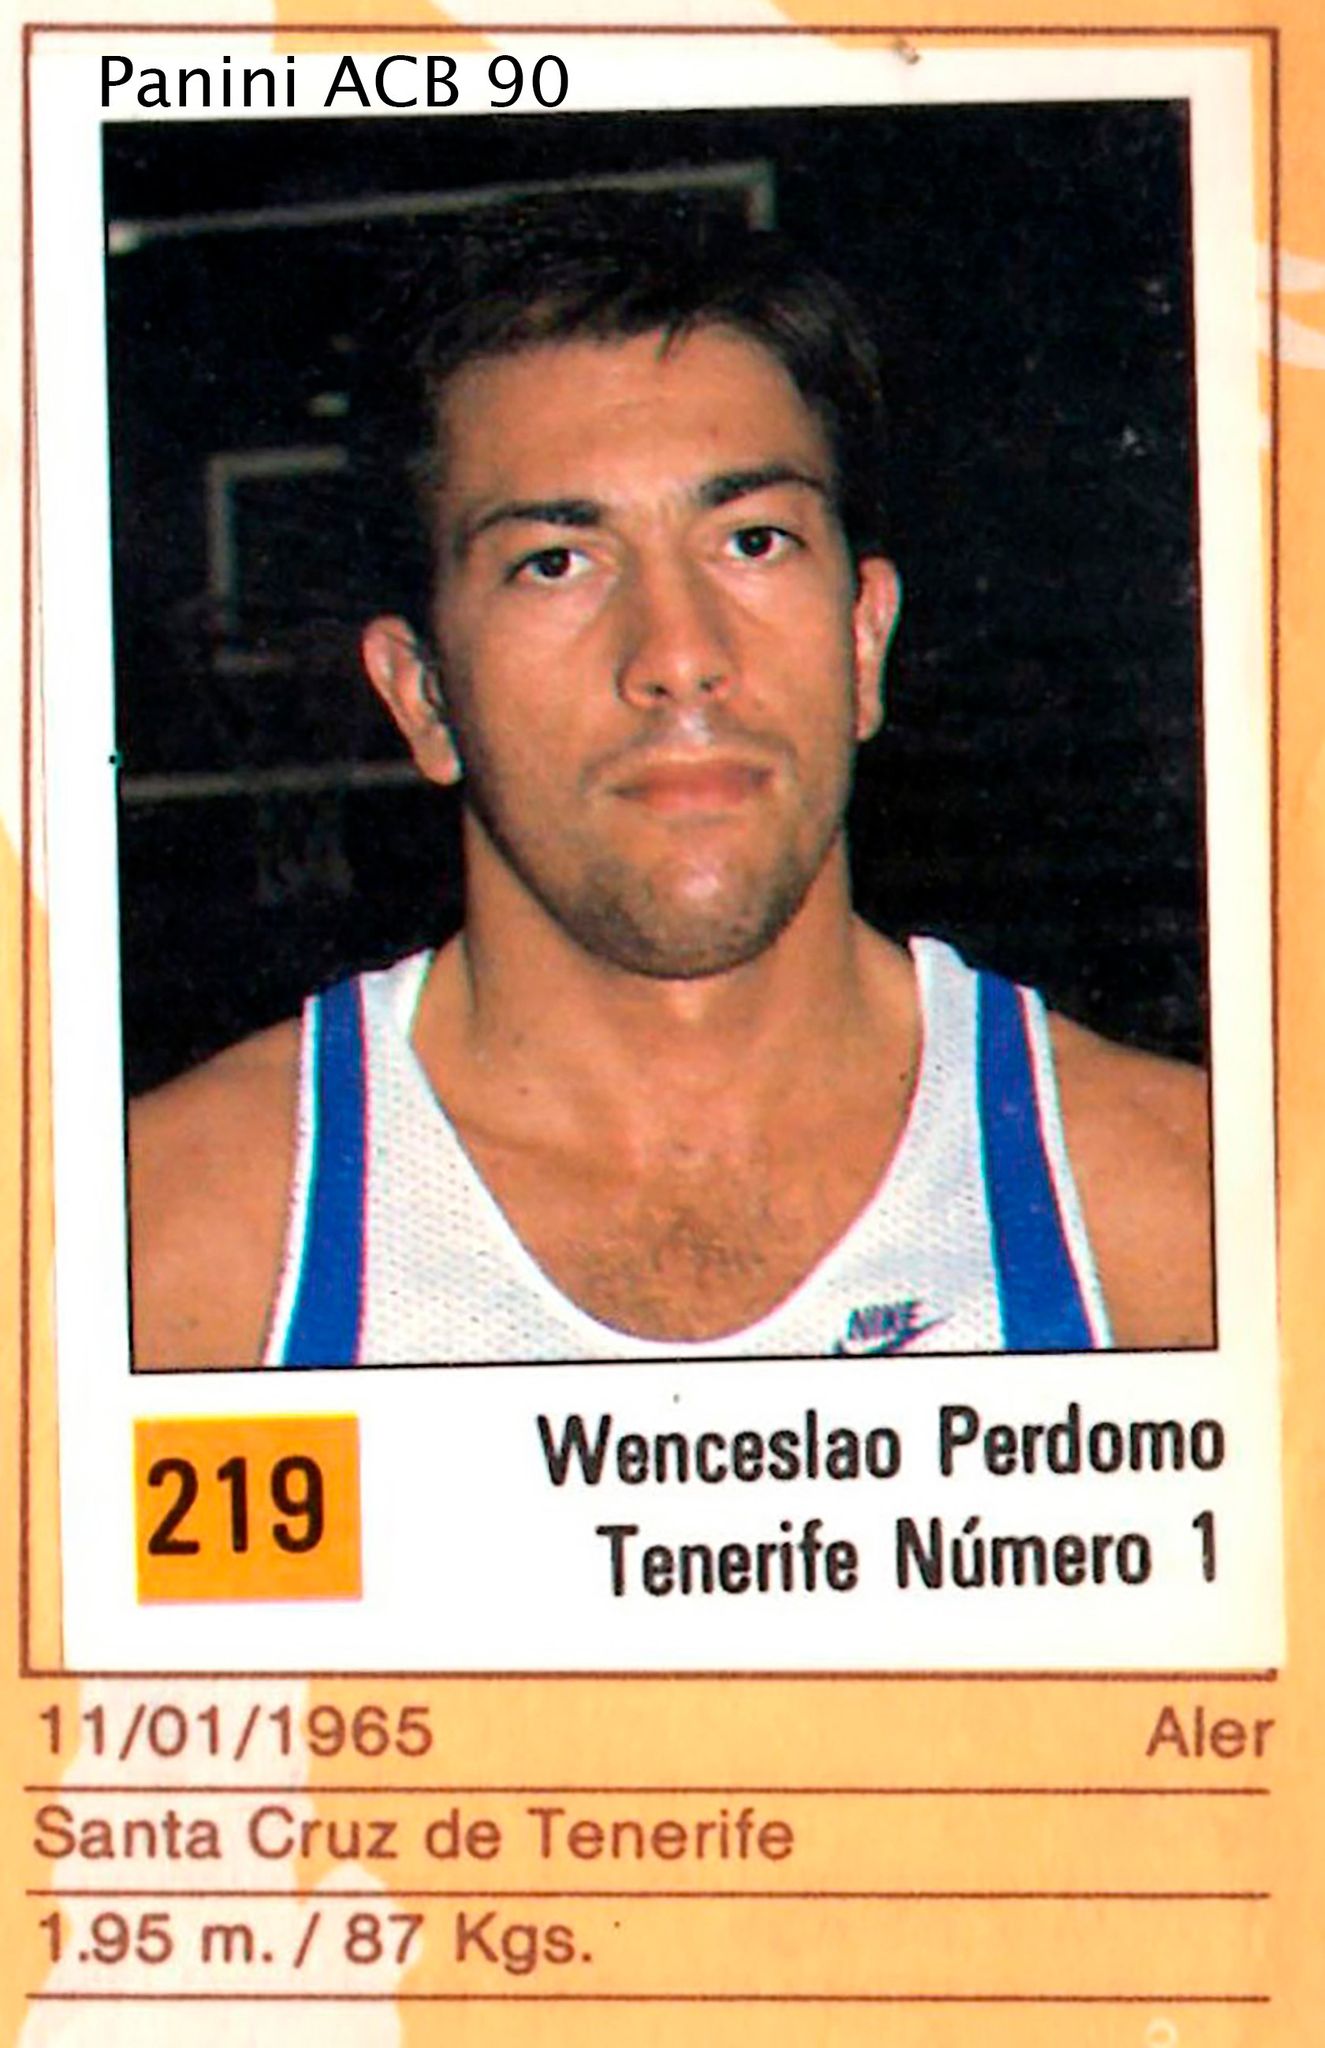 Basket 90 ACB. Wen Perdomo (Tenerife Número 1). Ediciones Panini. 📸: Grupo de Facebook don basket.